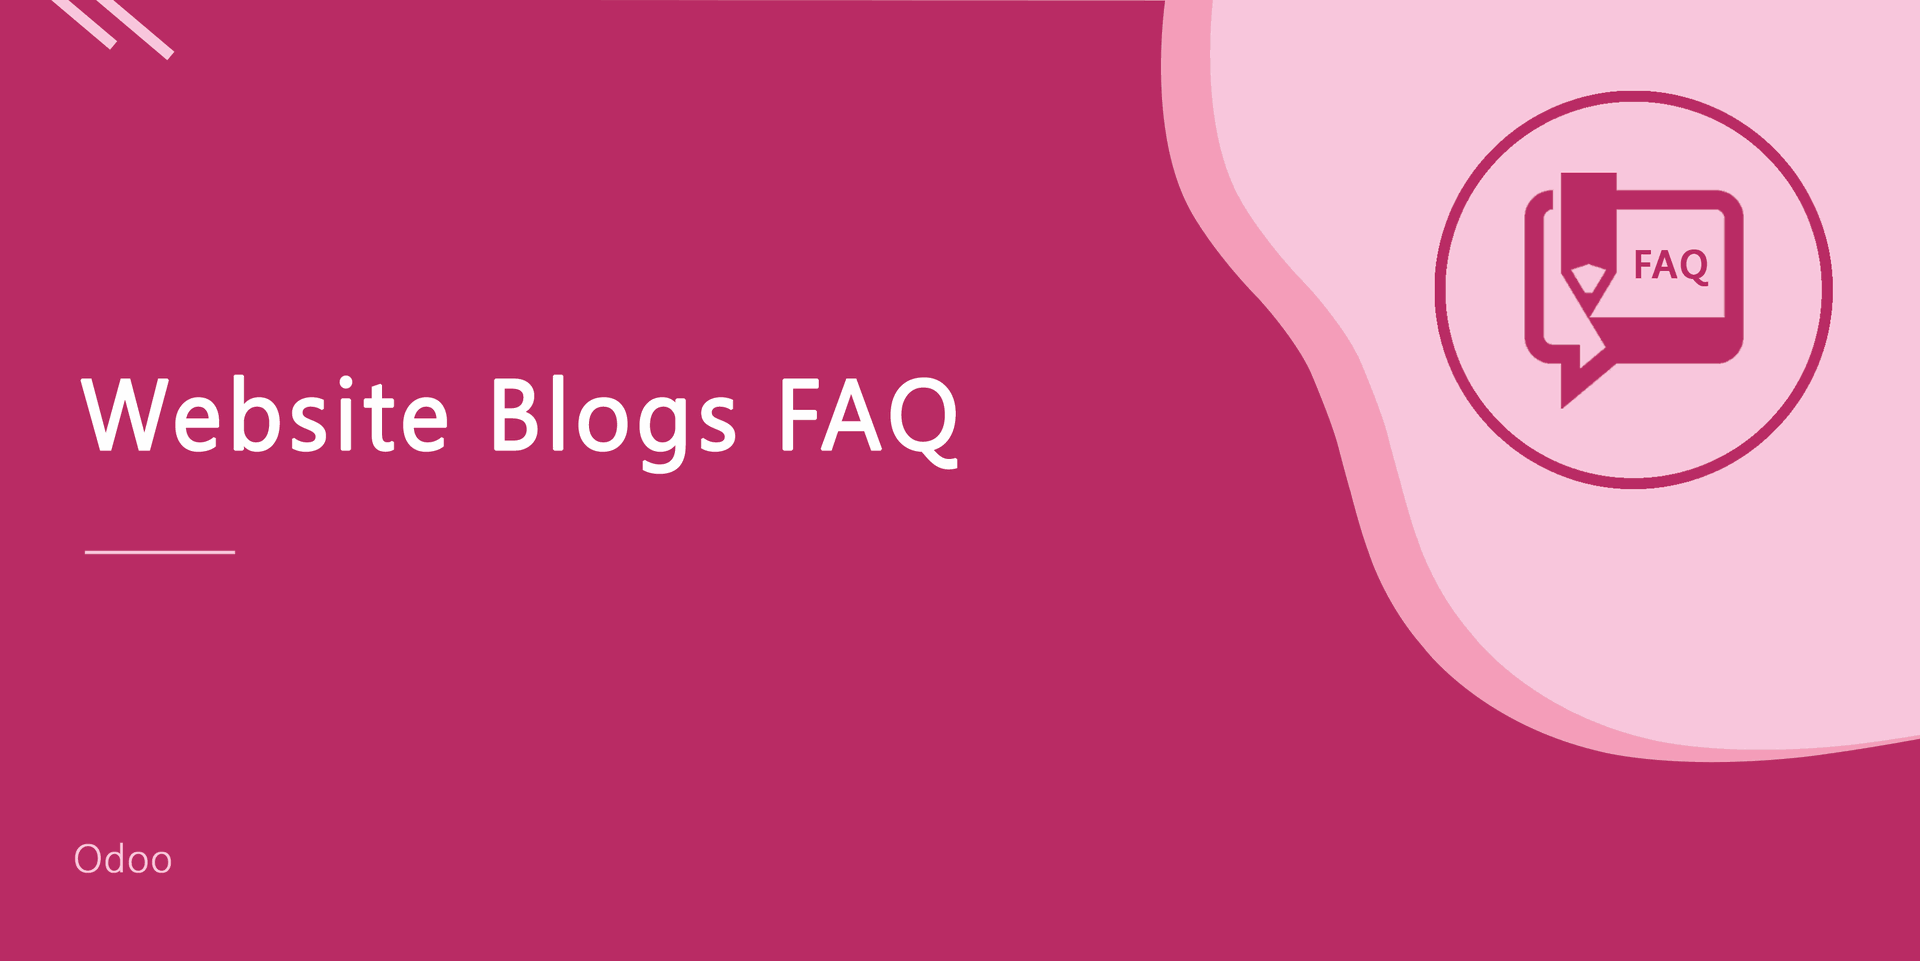 Website Blogs FAQ
